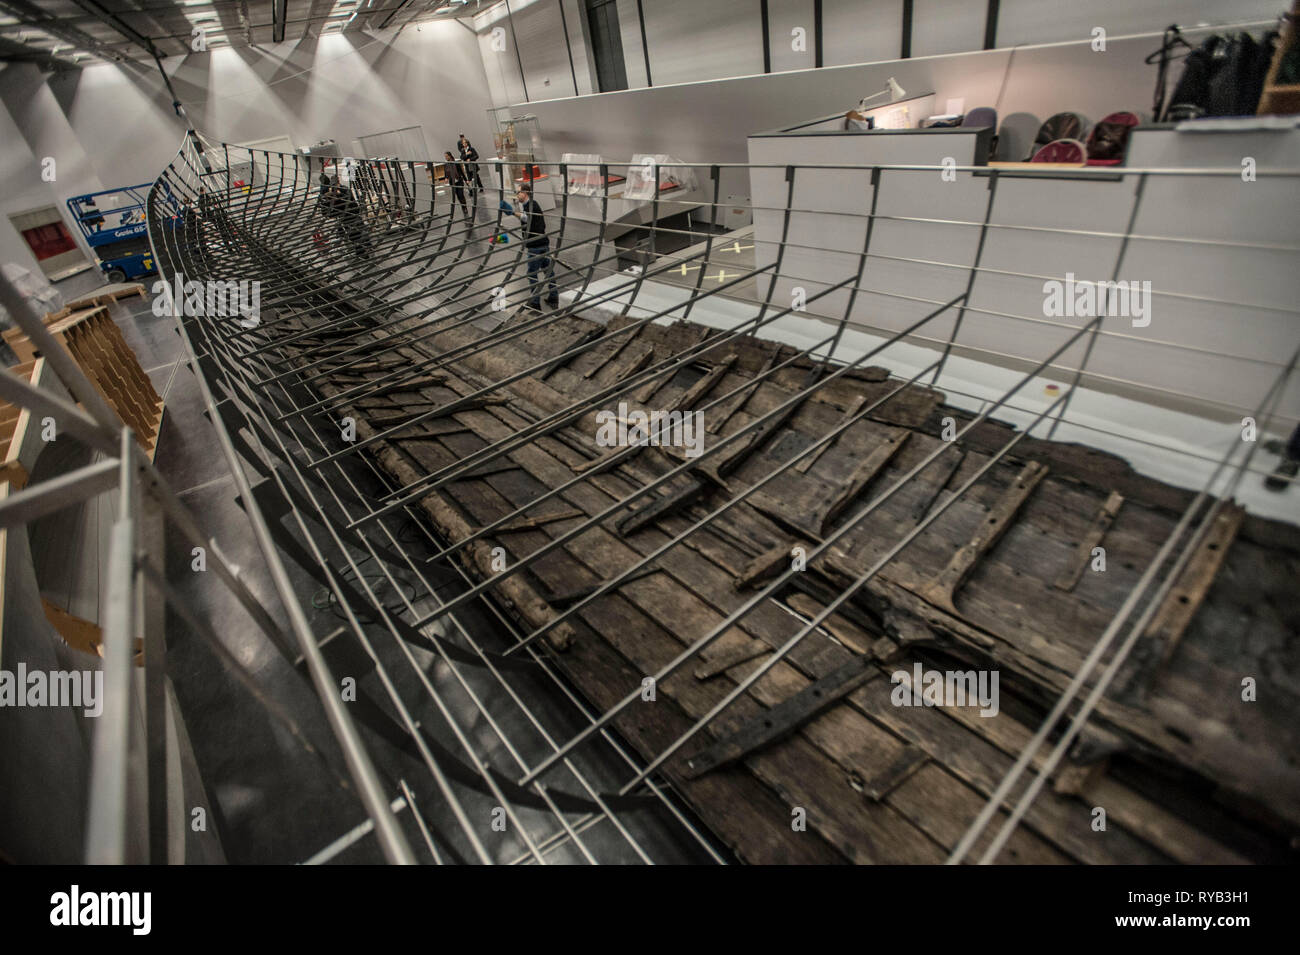 Viste di legnami superstite dal più lungo Viking nave da guerra mai trovata visualizzati nel Regno Unito per la prima volta. I blocchi sono stati scrupolosamente montati insieme come un enorme puzzle e posto all'interno di una dimensione effettiva culla in acciaio . Il lavoro di ricostruzione è da membri museo nazionale della Danimarca che sono venuti oltre al Museo specialmente. Il 37 metri di lunghezza della nave costituirà il fulcro del British Museum di BP mostra, Vichinghi: vita e leggenda. La nave, noto come Roskilde 6, è stato scavato dalle rive del fiordo di Roskilde in Danimarca durante il corso dei lavori intrapresi per sviluppare il Roski Foto Stock